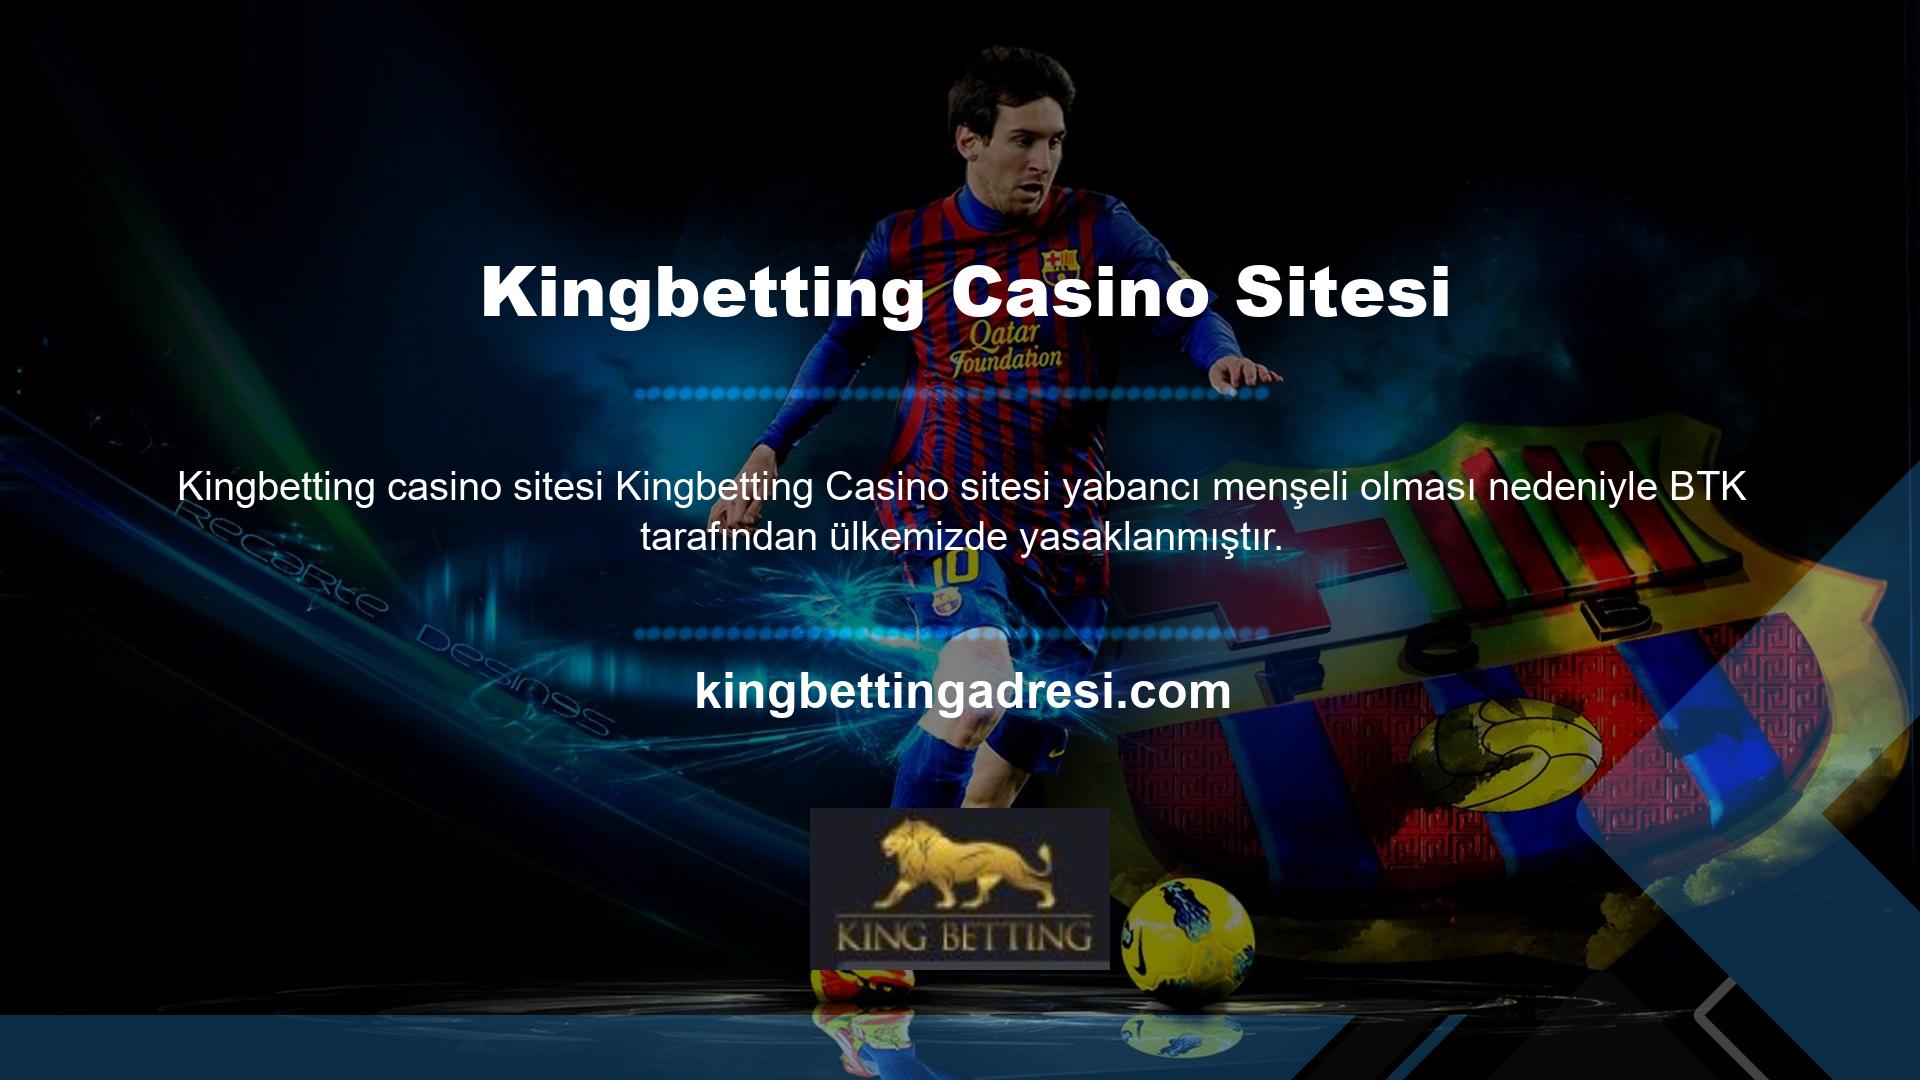 Kingbetting casino siteleri aynı zamanda Bilgi Teknolojileri ve Telekomünikasyon Kurumu tarafından offshore lokasyonlar için belirlenen giriş engeli olan BTK'ya da tabidir